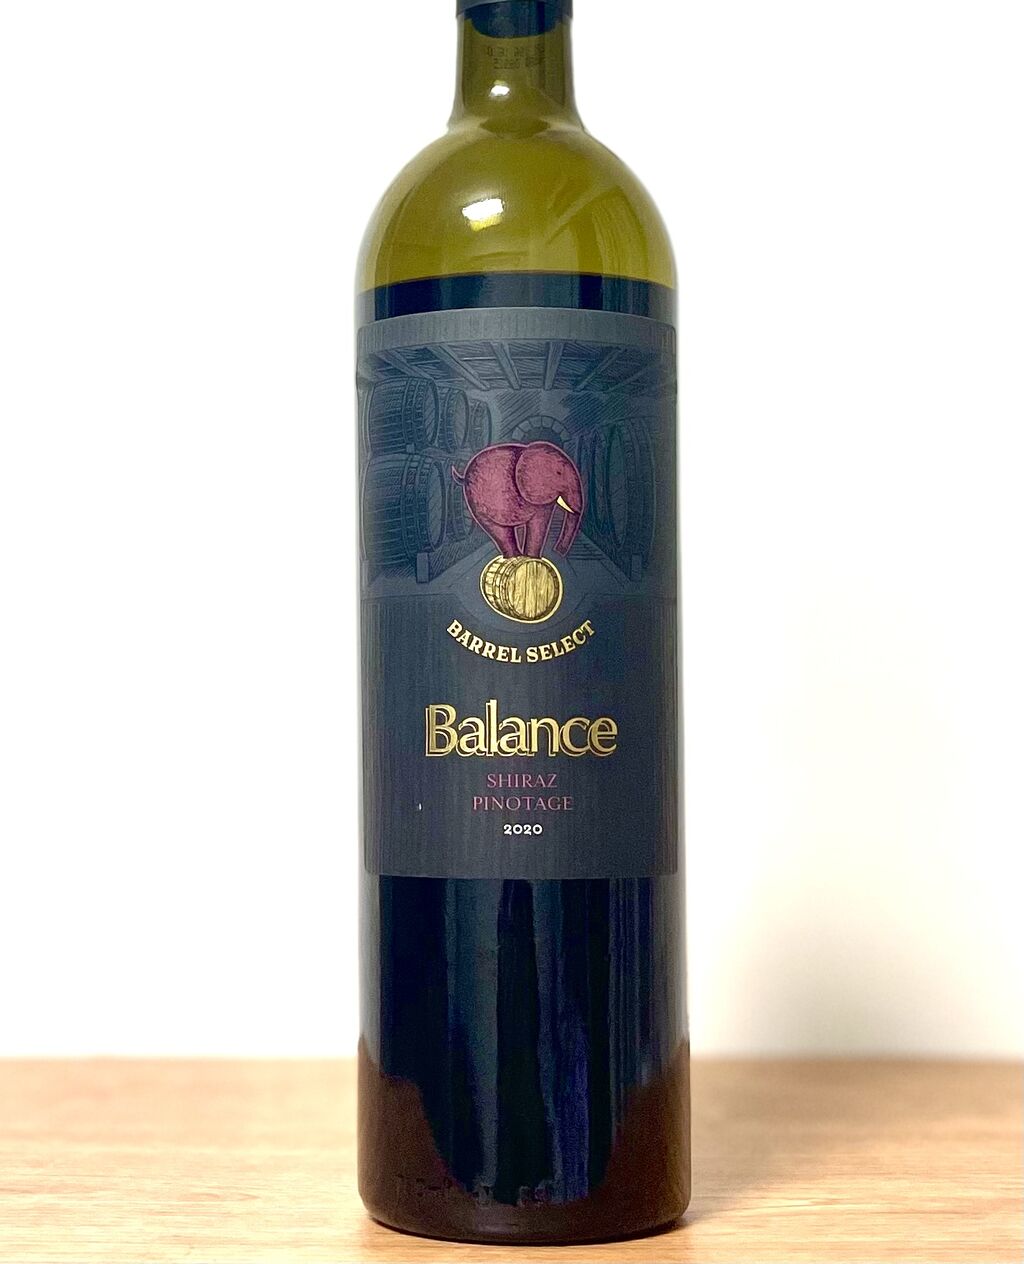 カルディのワイン バランス バレルセレクト シラーズピノタージュ を再度飲む Kozeのワインブログ